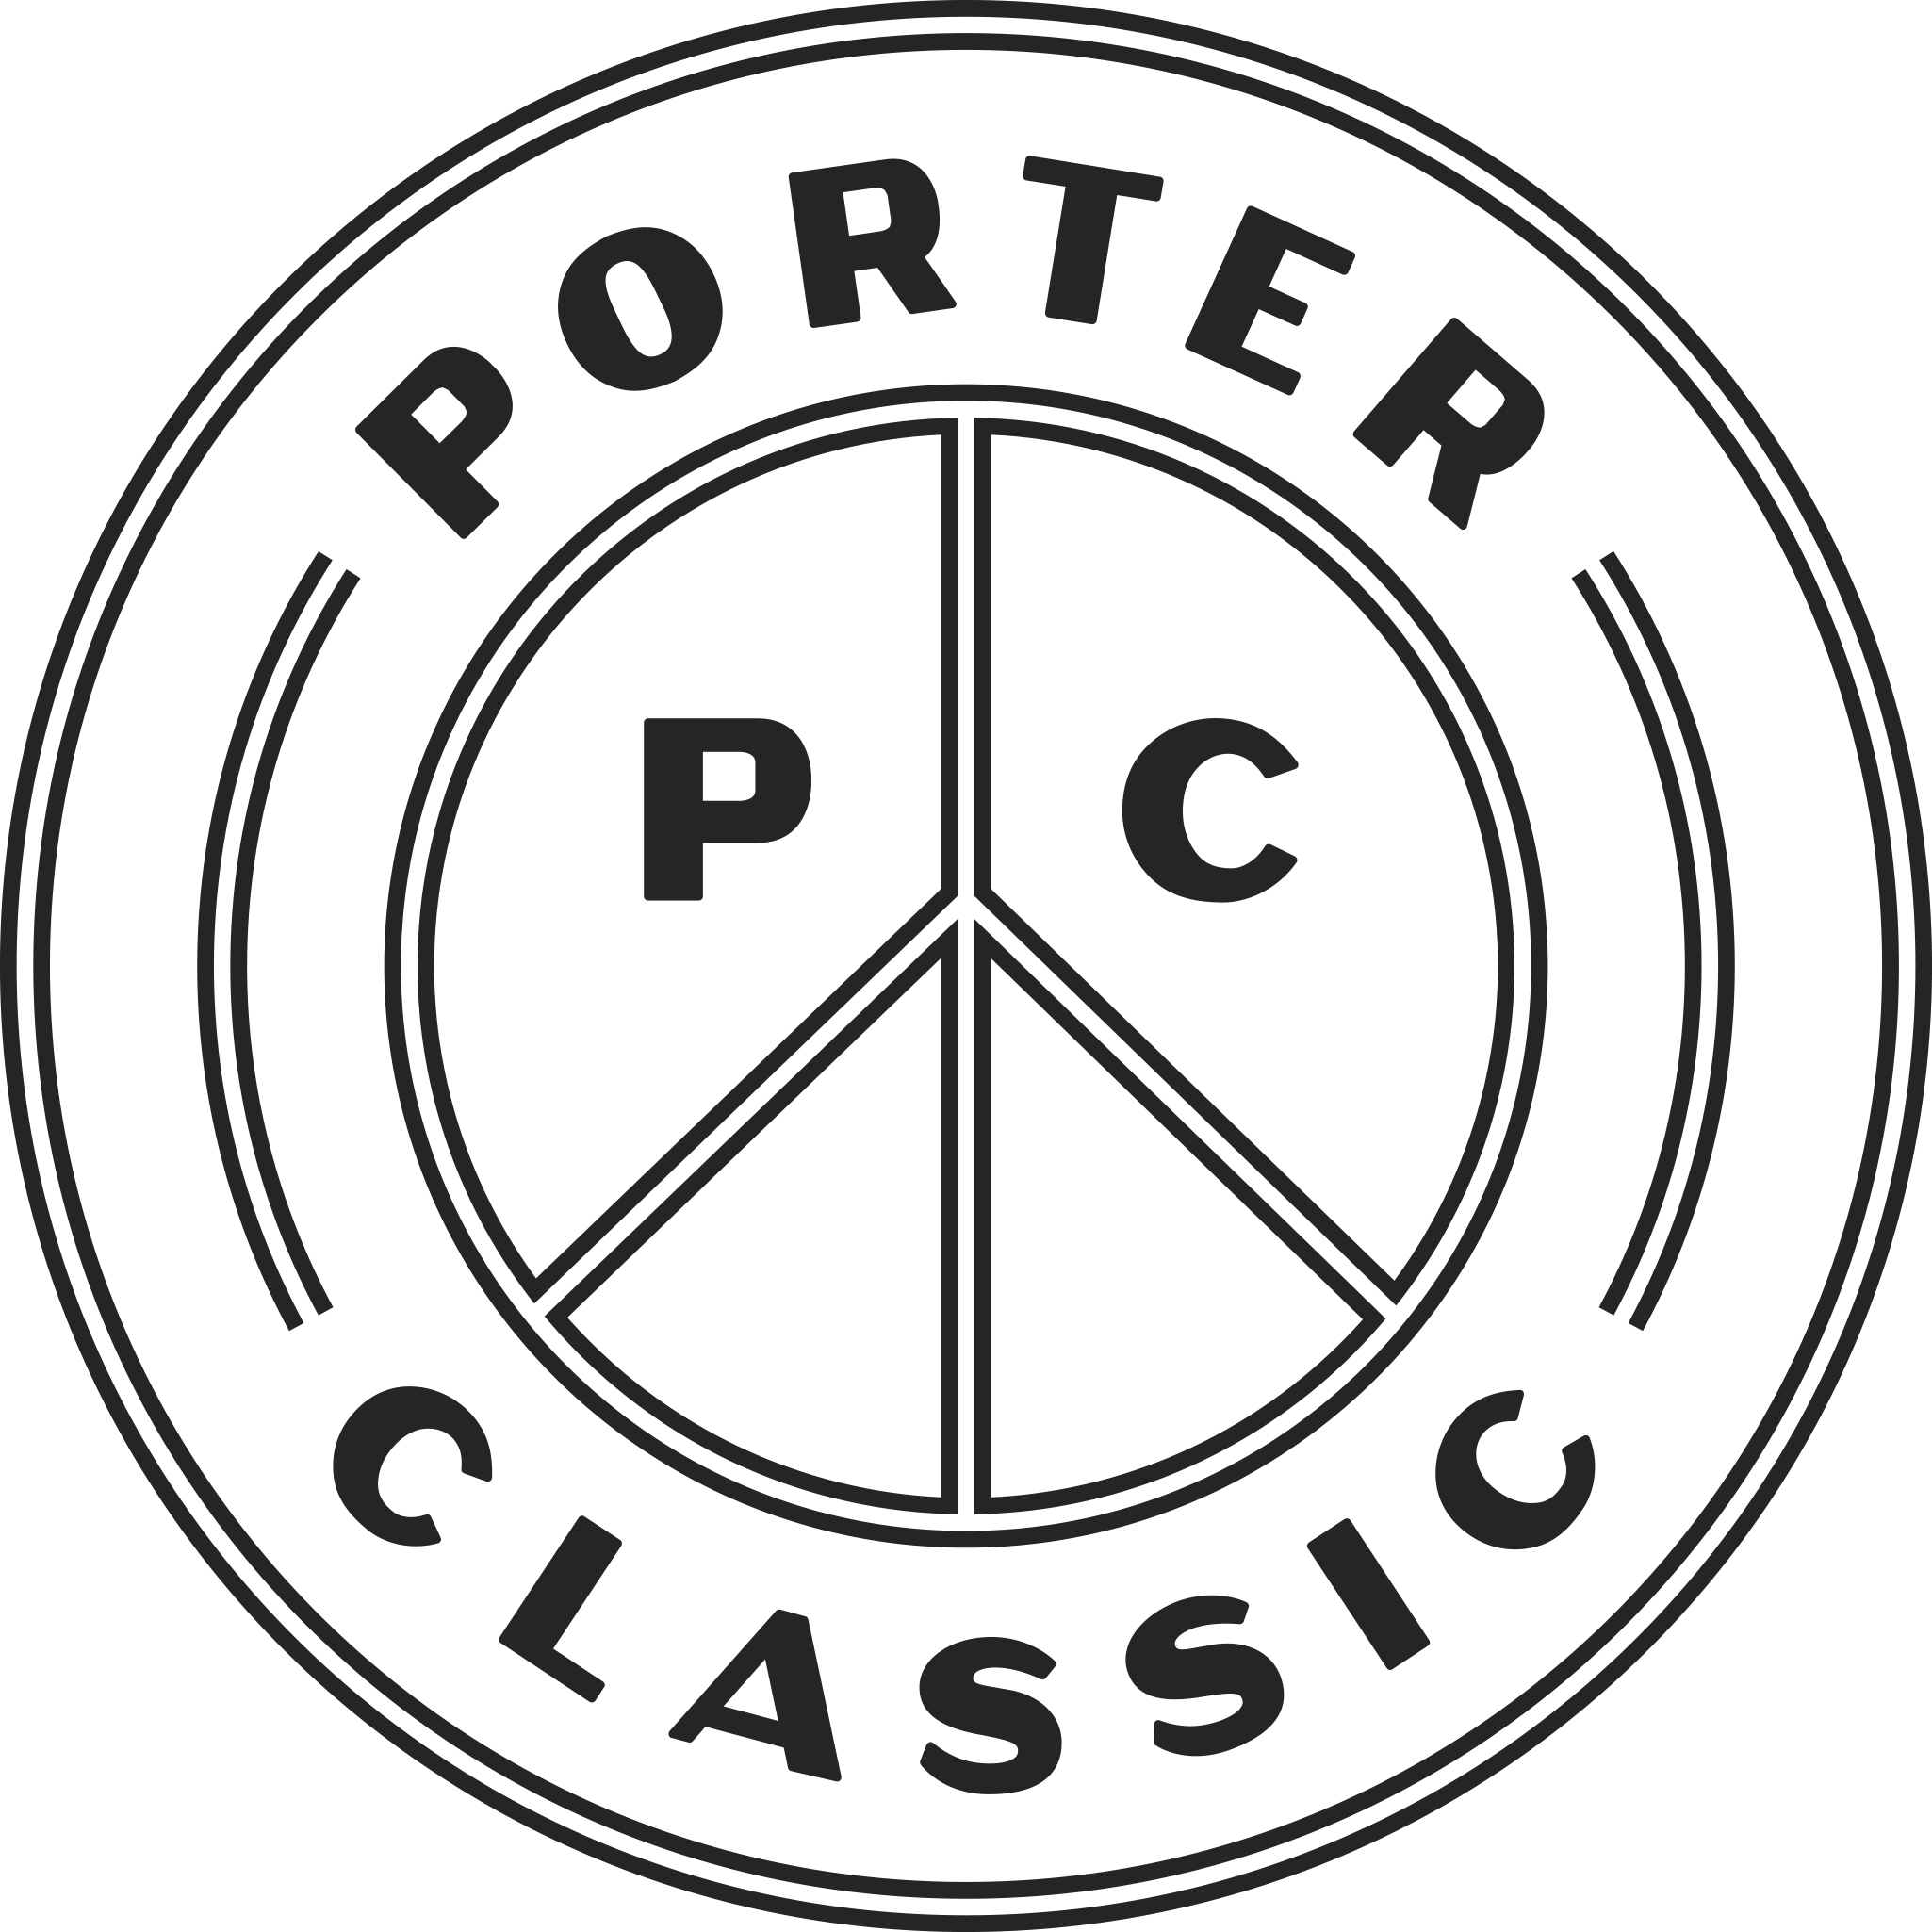 PORTER CLASSIC|パンツ|PORTER CLASSIC コーデュロイ モールスキン ハイブリッド パンツ PC-018-2430